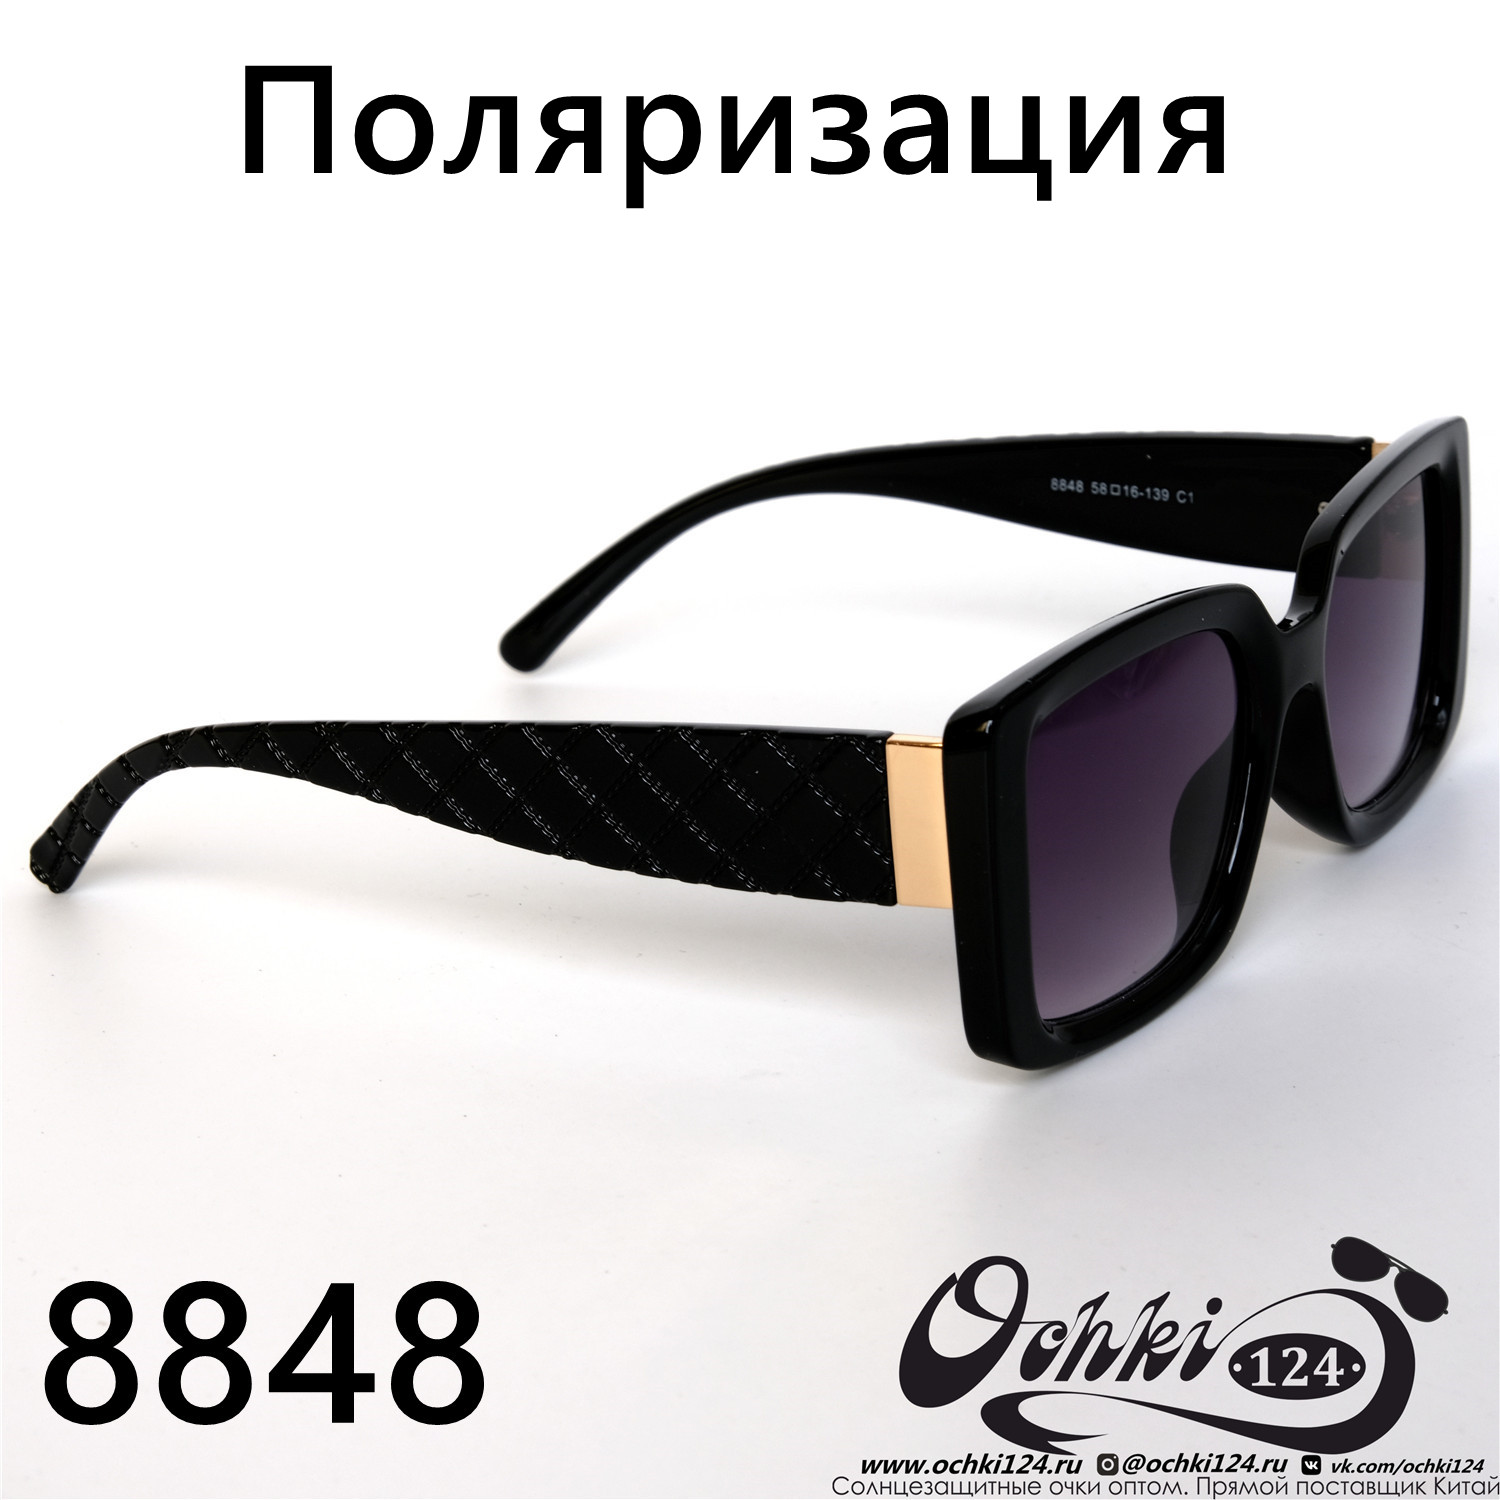  Солнцезащитные очки картинка 2022 Женские Поляризованные Классический Aras 8848-1 